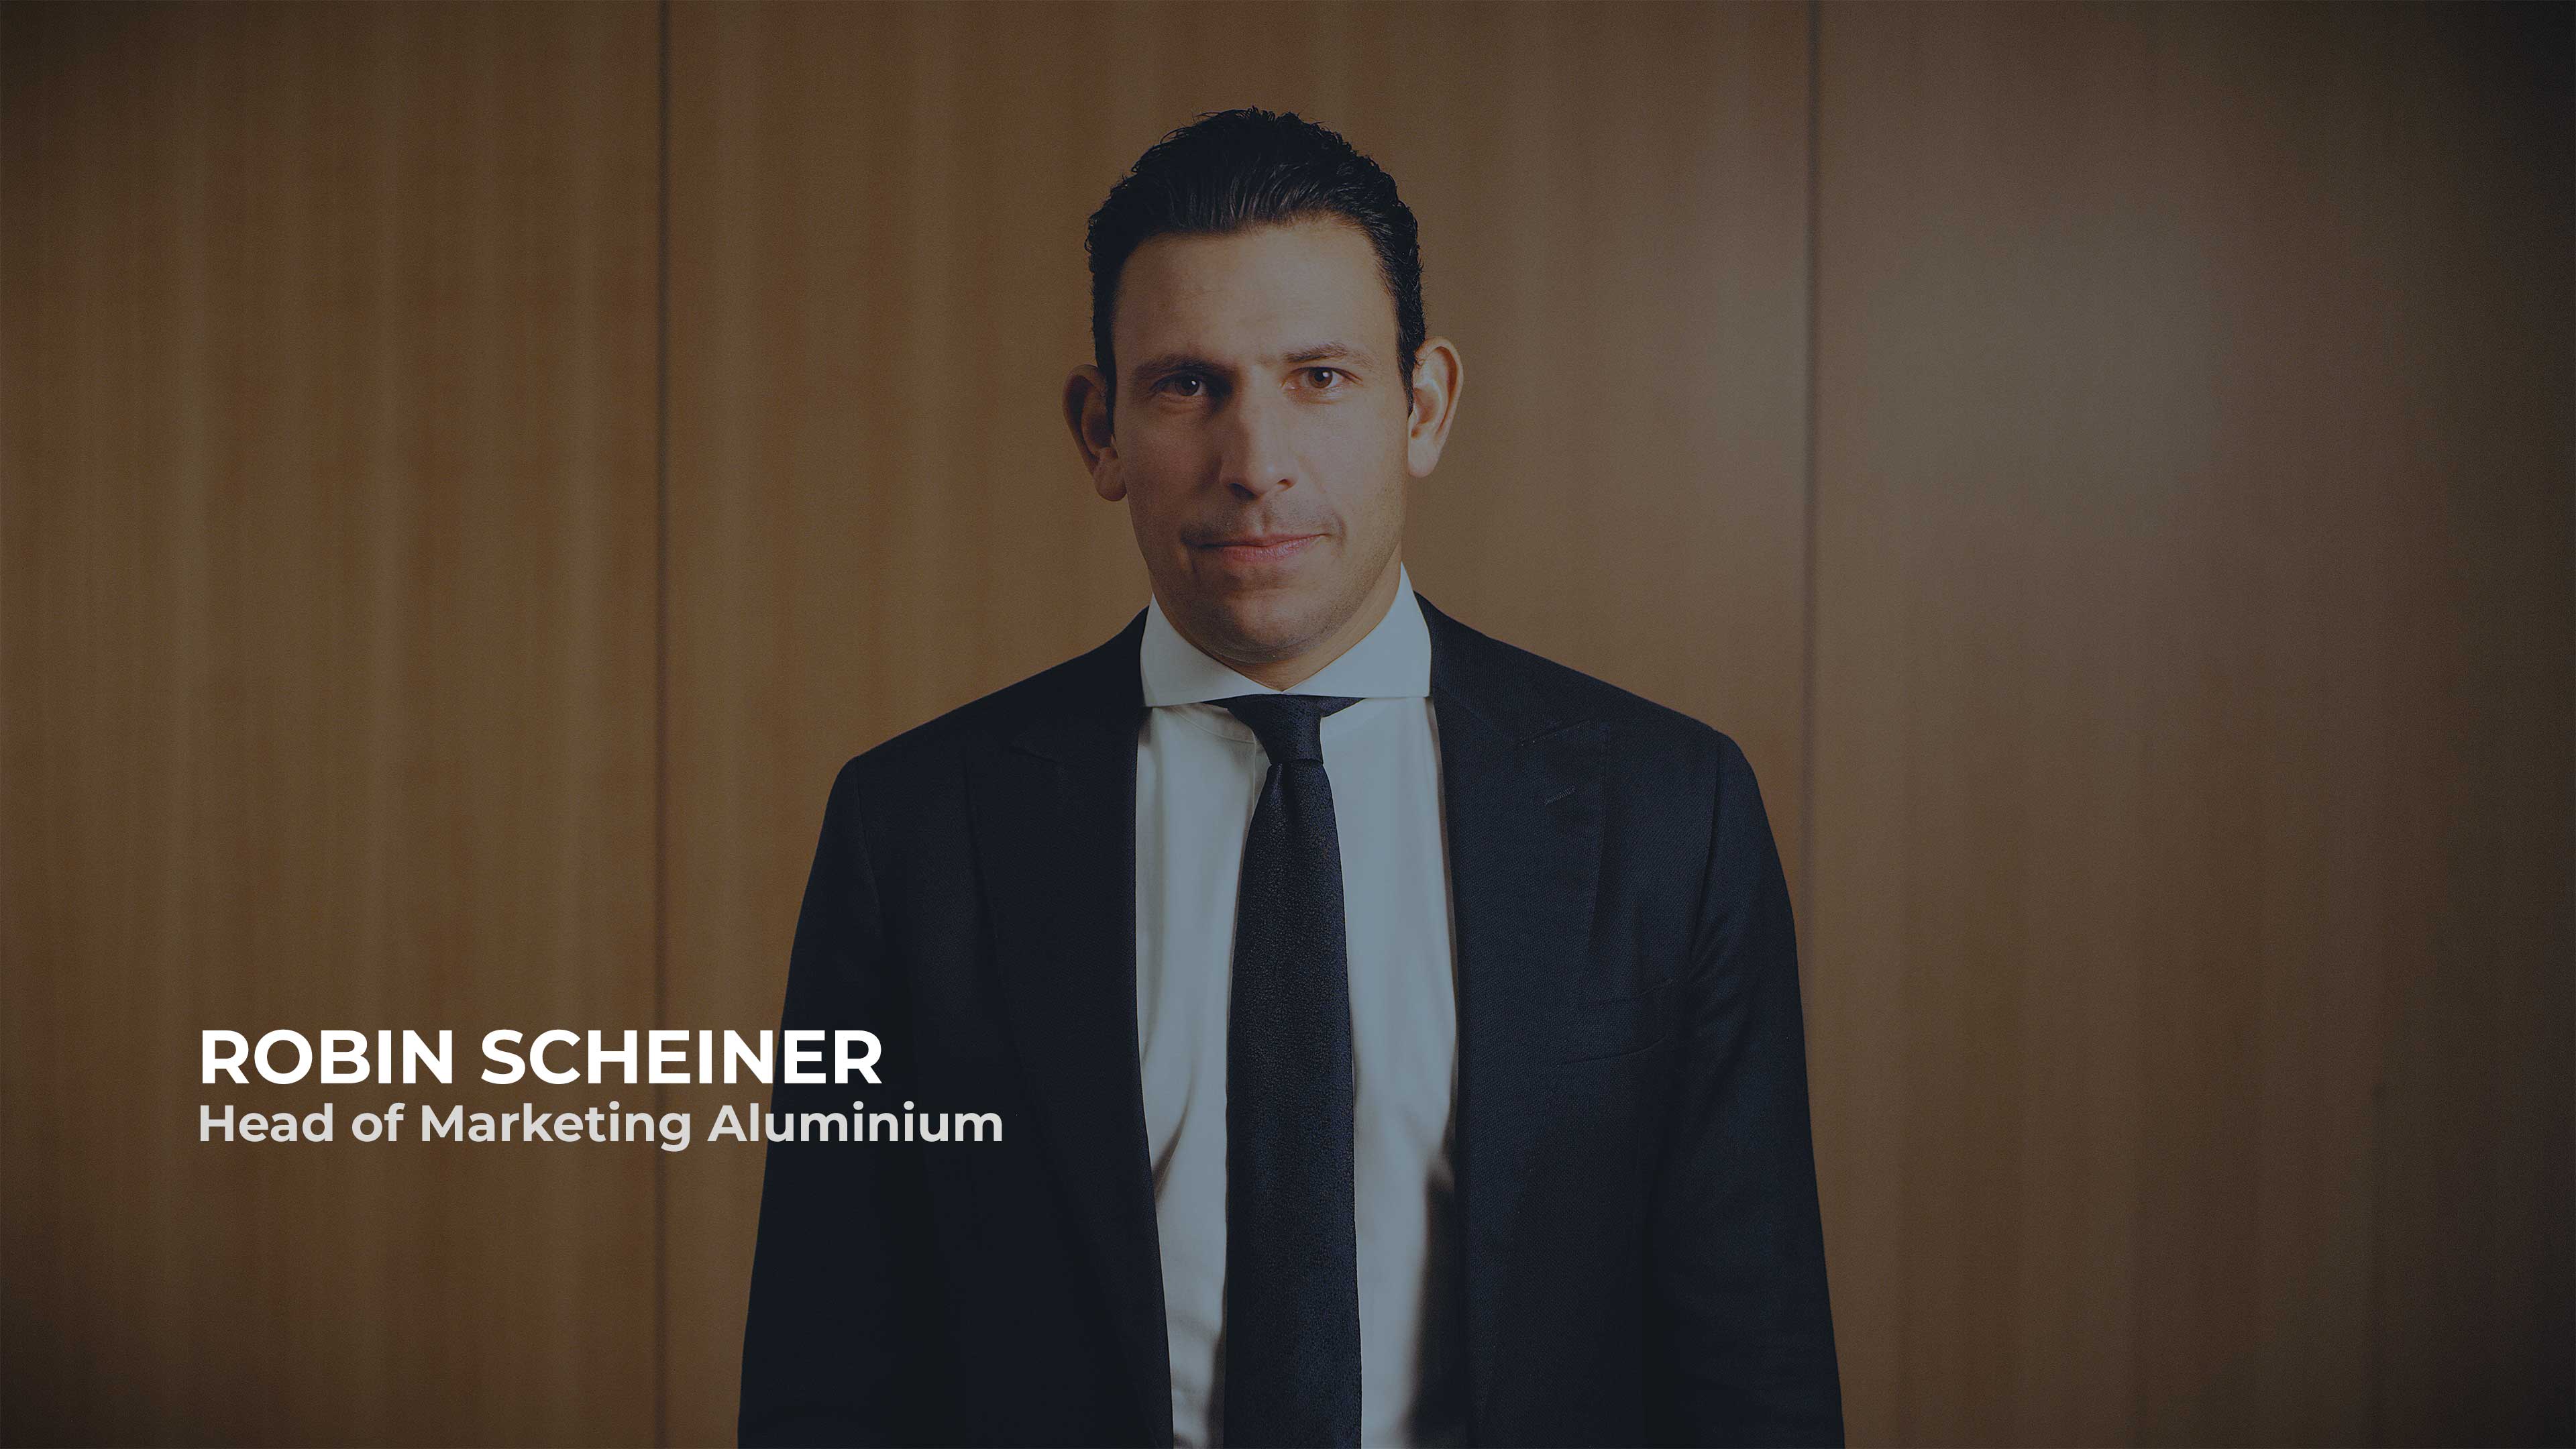 Watch Robin Scheiner, Head of Marketing Aluminium